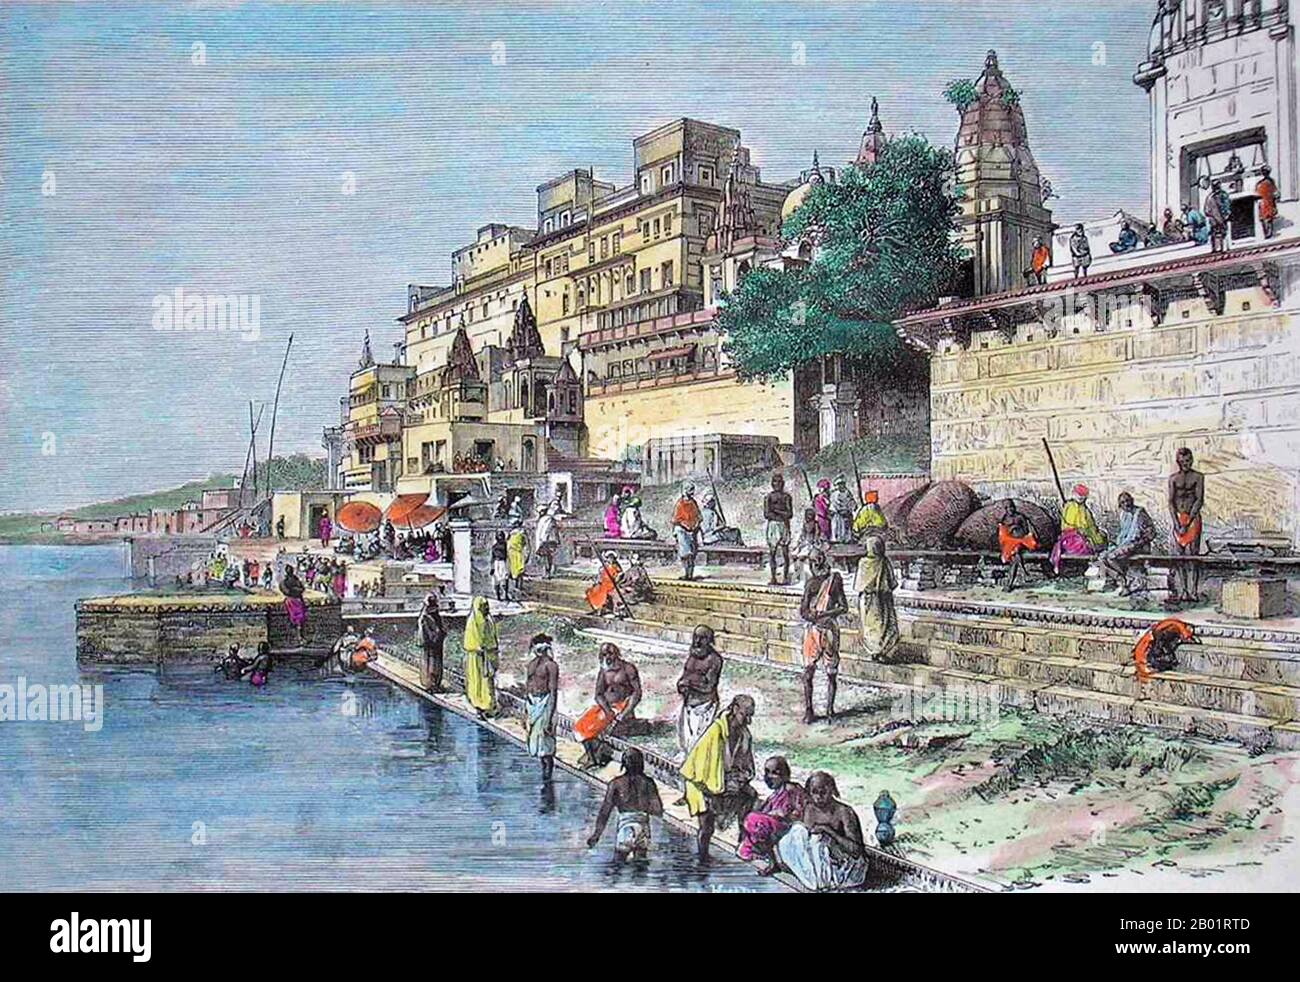 Indien: Hindu-Tempel, Benares. Farbstich von T. Taylor, um 1883. Varanasi, auch bekannt als Banaras oder Benaras, ist eine Stadt am Ufer des Ganges im indischen Bundesstaat Uttar Pradesh, 320 Kilometer (199 mi) südöstlich der Hauptstadt Lucknow. Die Stadt wird von Hindus, Buddhisten und Jains als heilige Stadt angesehen. Es ist eine der ältesten durchgehend bewohnten Städte der Welt und die älteste in Indien. Der Kaschi Naresh (Maharaja von Kaschi) ist der wichtigste Kulturförderer von Varanasi und ein wesentlicher Bestandteil aller religiösen Feiern. Stockfoto